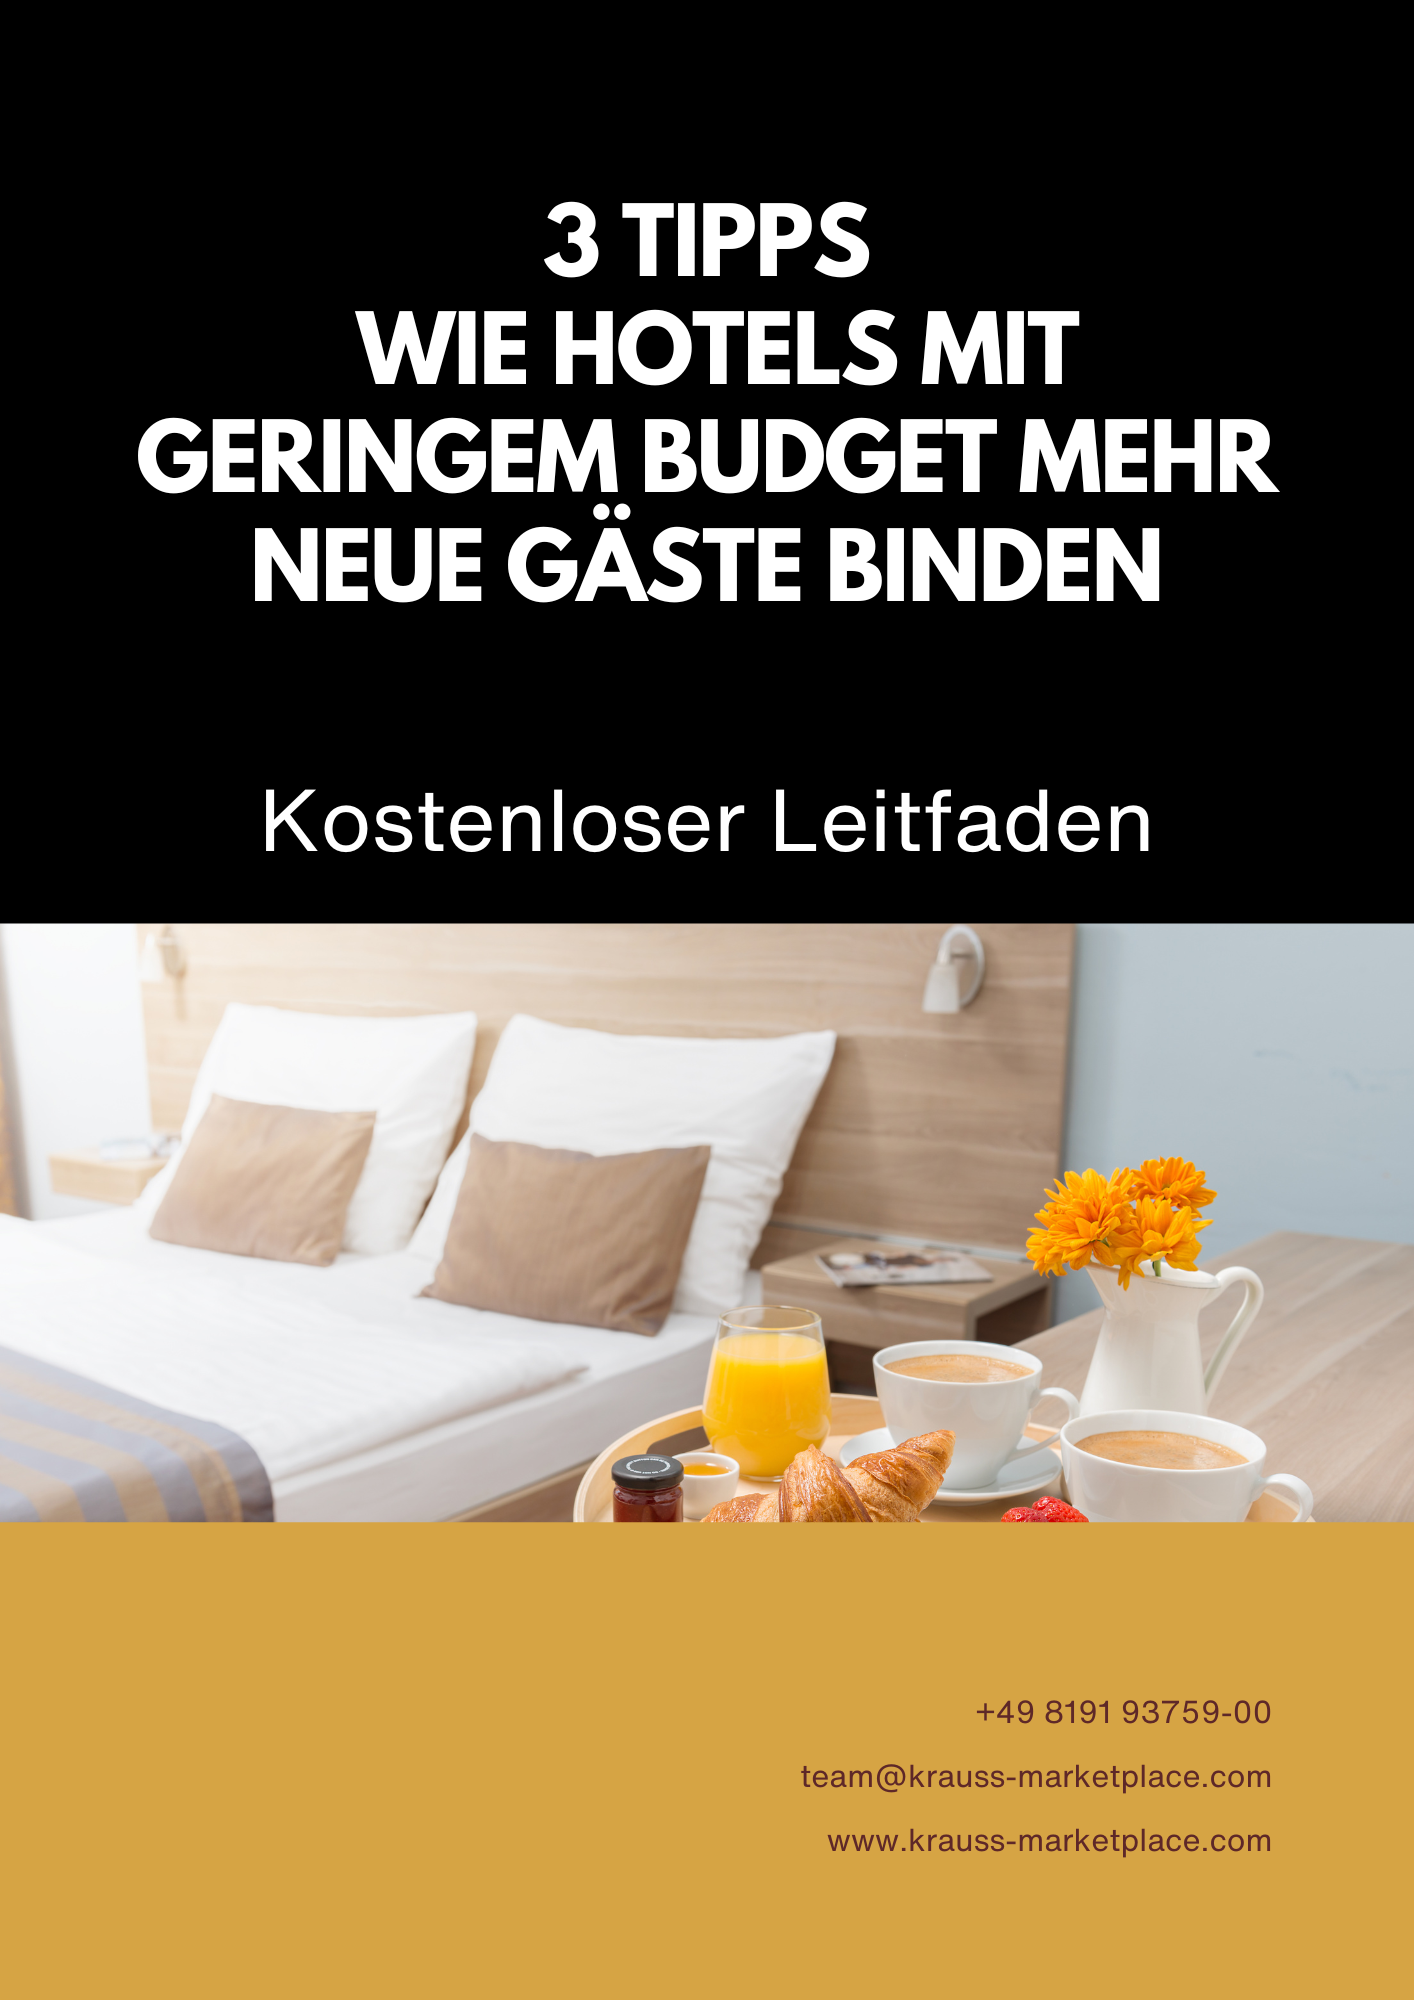 3 Tipps Wie Hotels mit geringem Budget mehr neue Gäste binden - Whitepaper